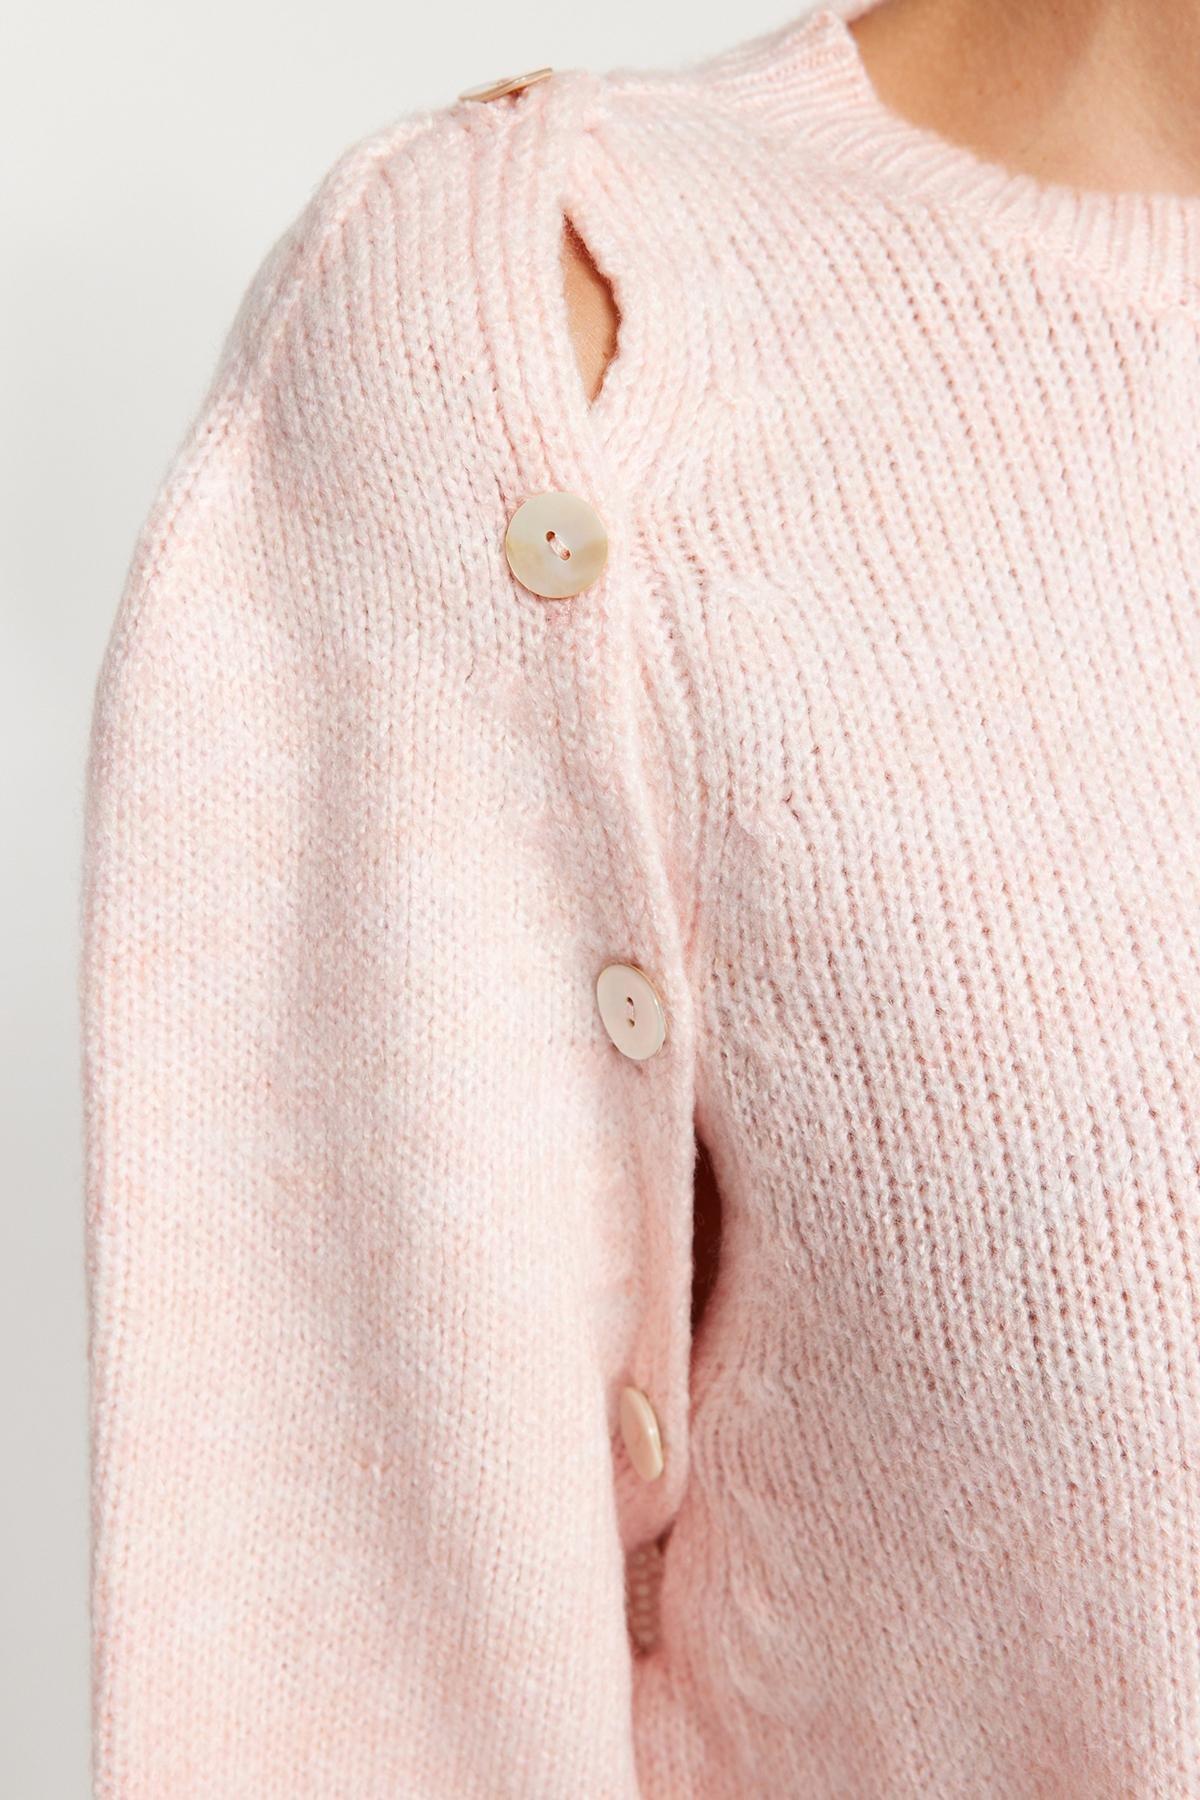 Trendyol - Cream Cut Out Knitwear Sweater